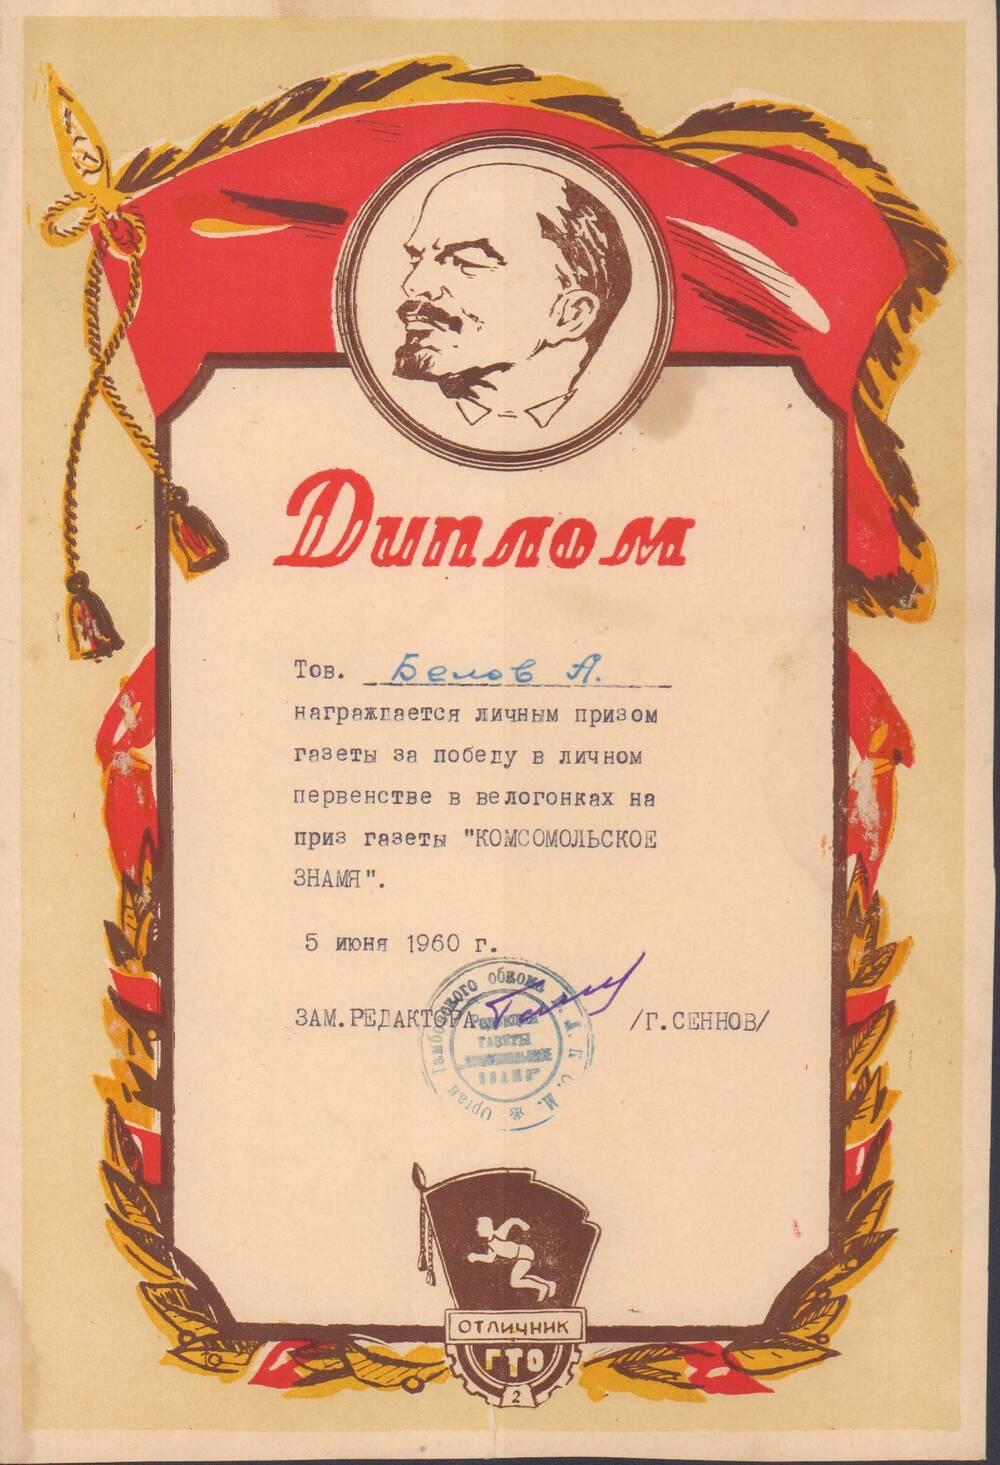 Диплом Белову А.М. о награждении личным призом газеты Комсомольское знамя за победу в личном первенстве, 5 июня 1960 г